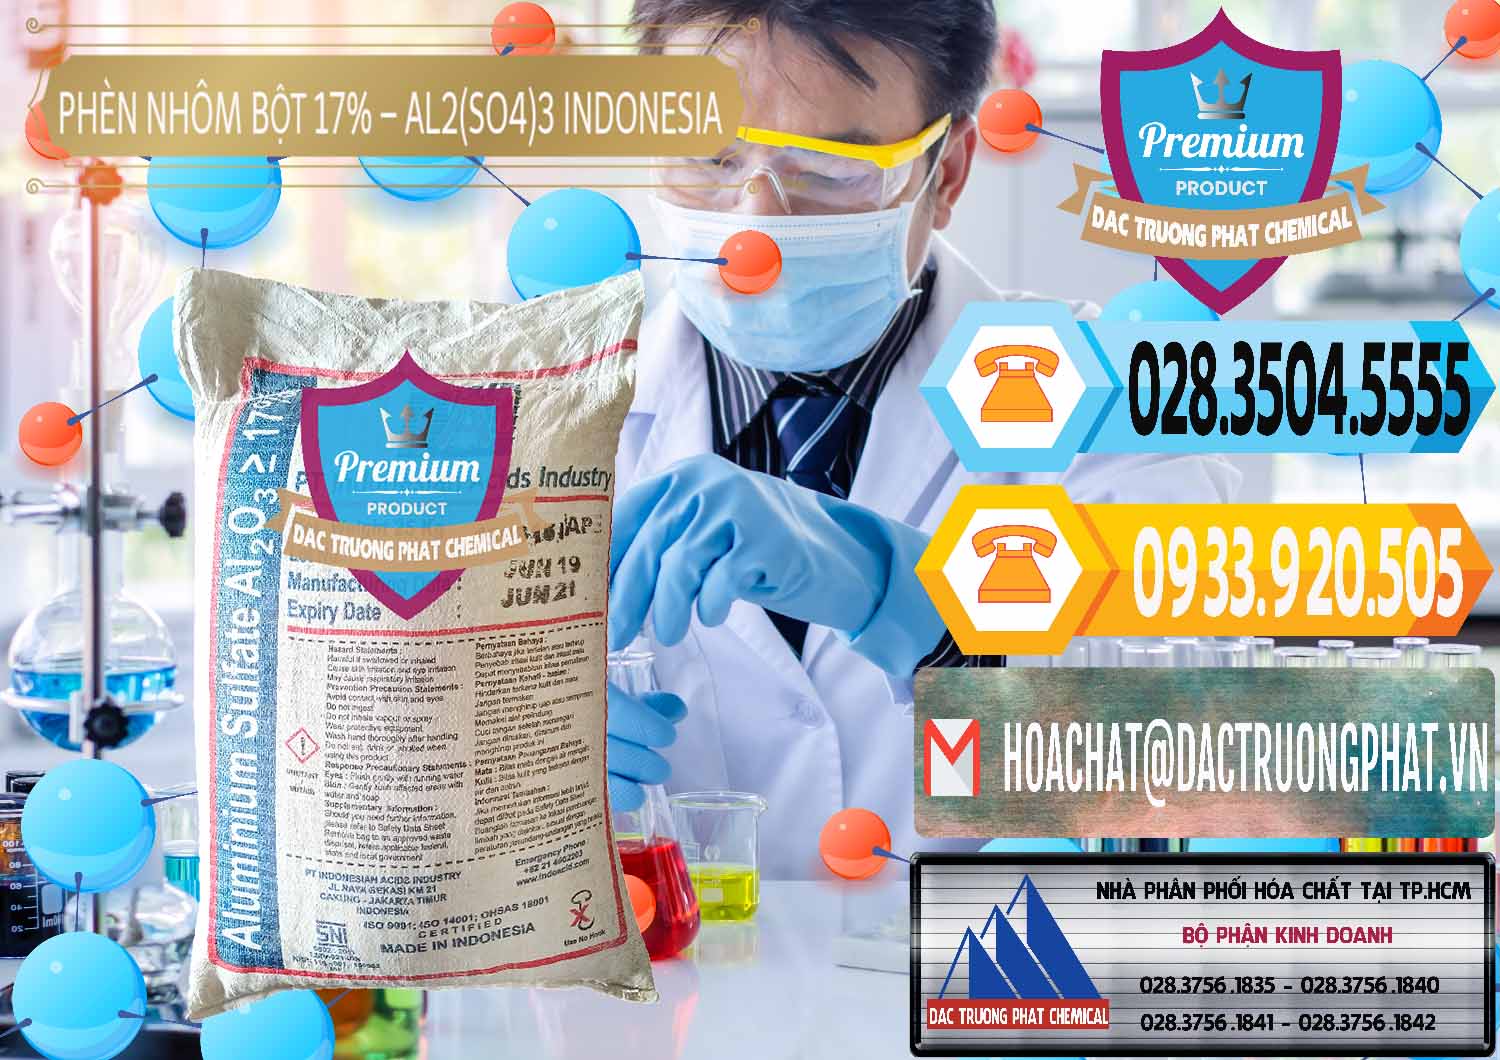 Chuyên bán & cung ứng Phèn Nhôm Bột - Al2(SO4)3 17% bao 25kg Indonesia - 0114 - Bán & cung cấp hóa chất tại TP.HCM - hoachattayrua.net